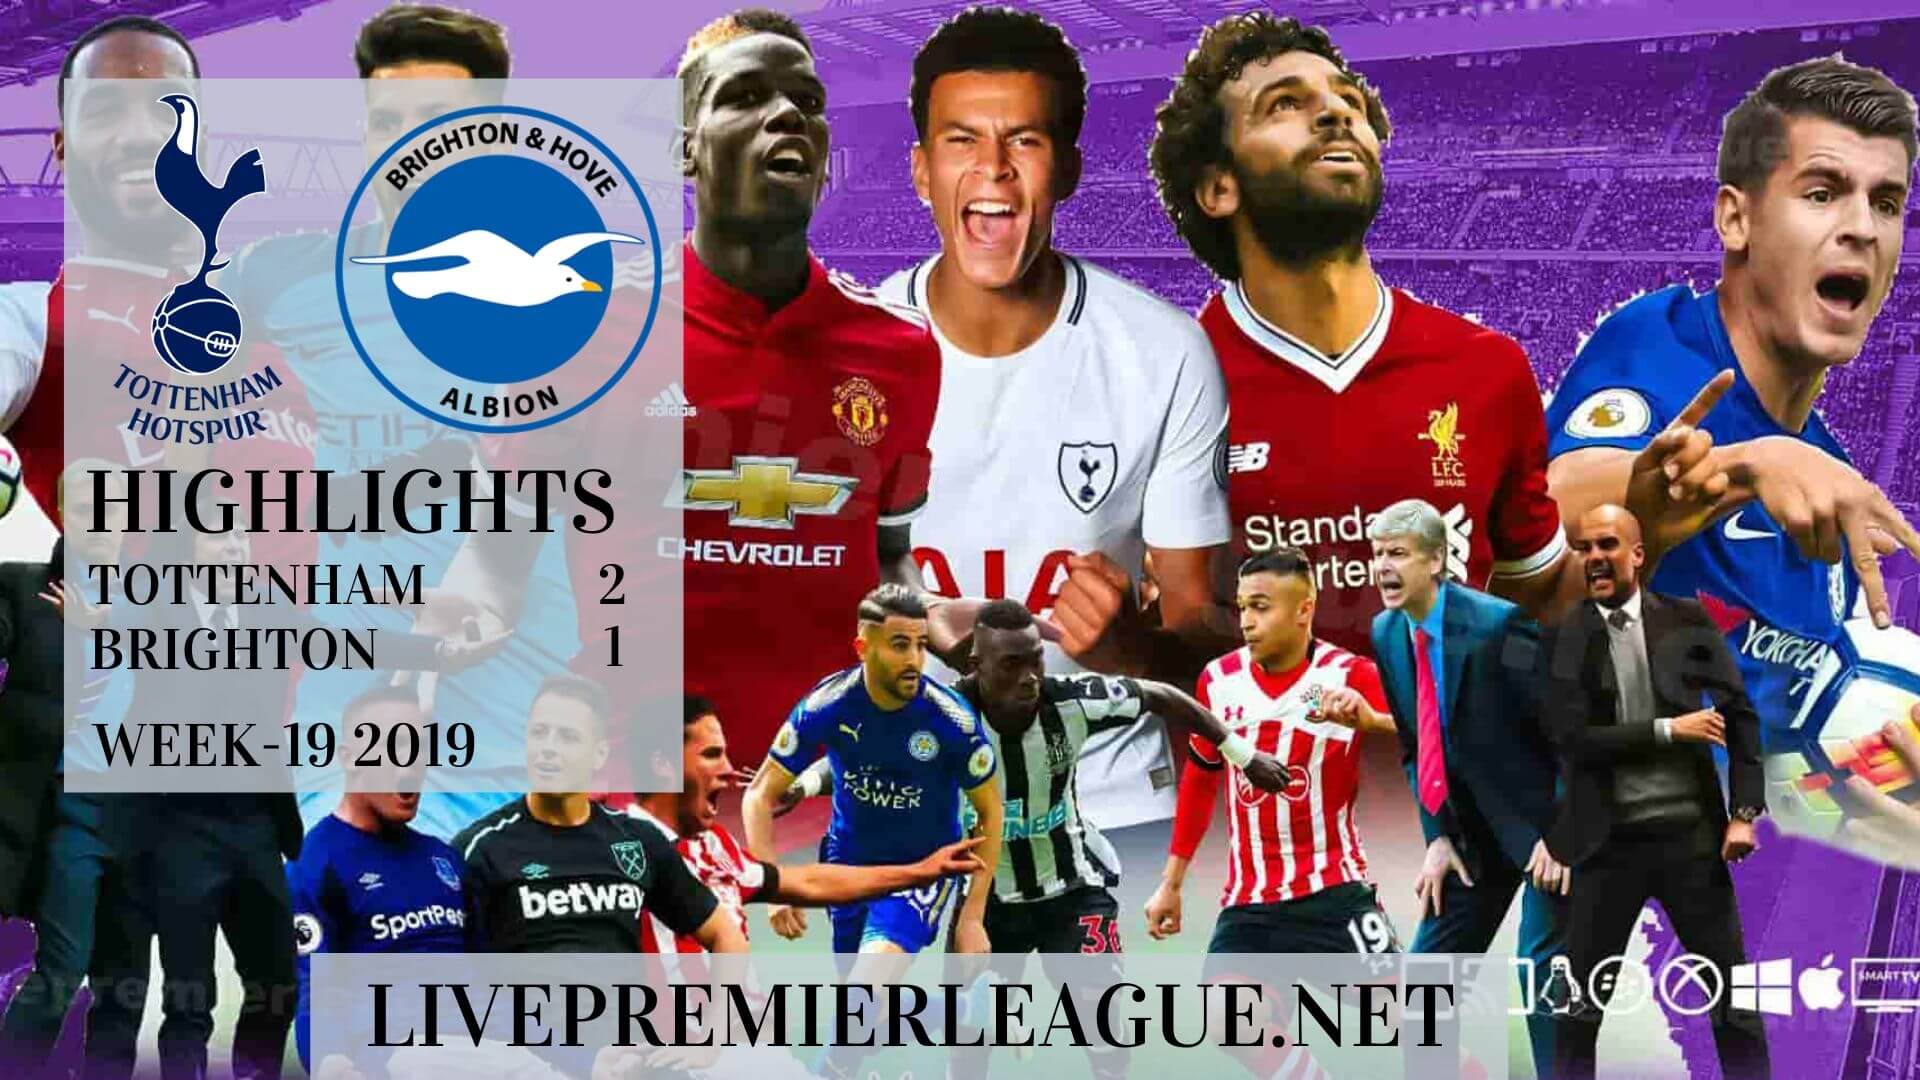 Tottenham Hotspur Vs Brighton Highlights 2019 Week 19